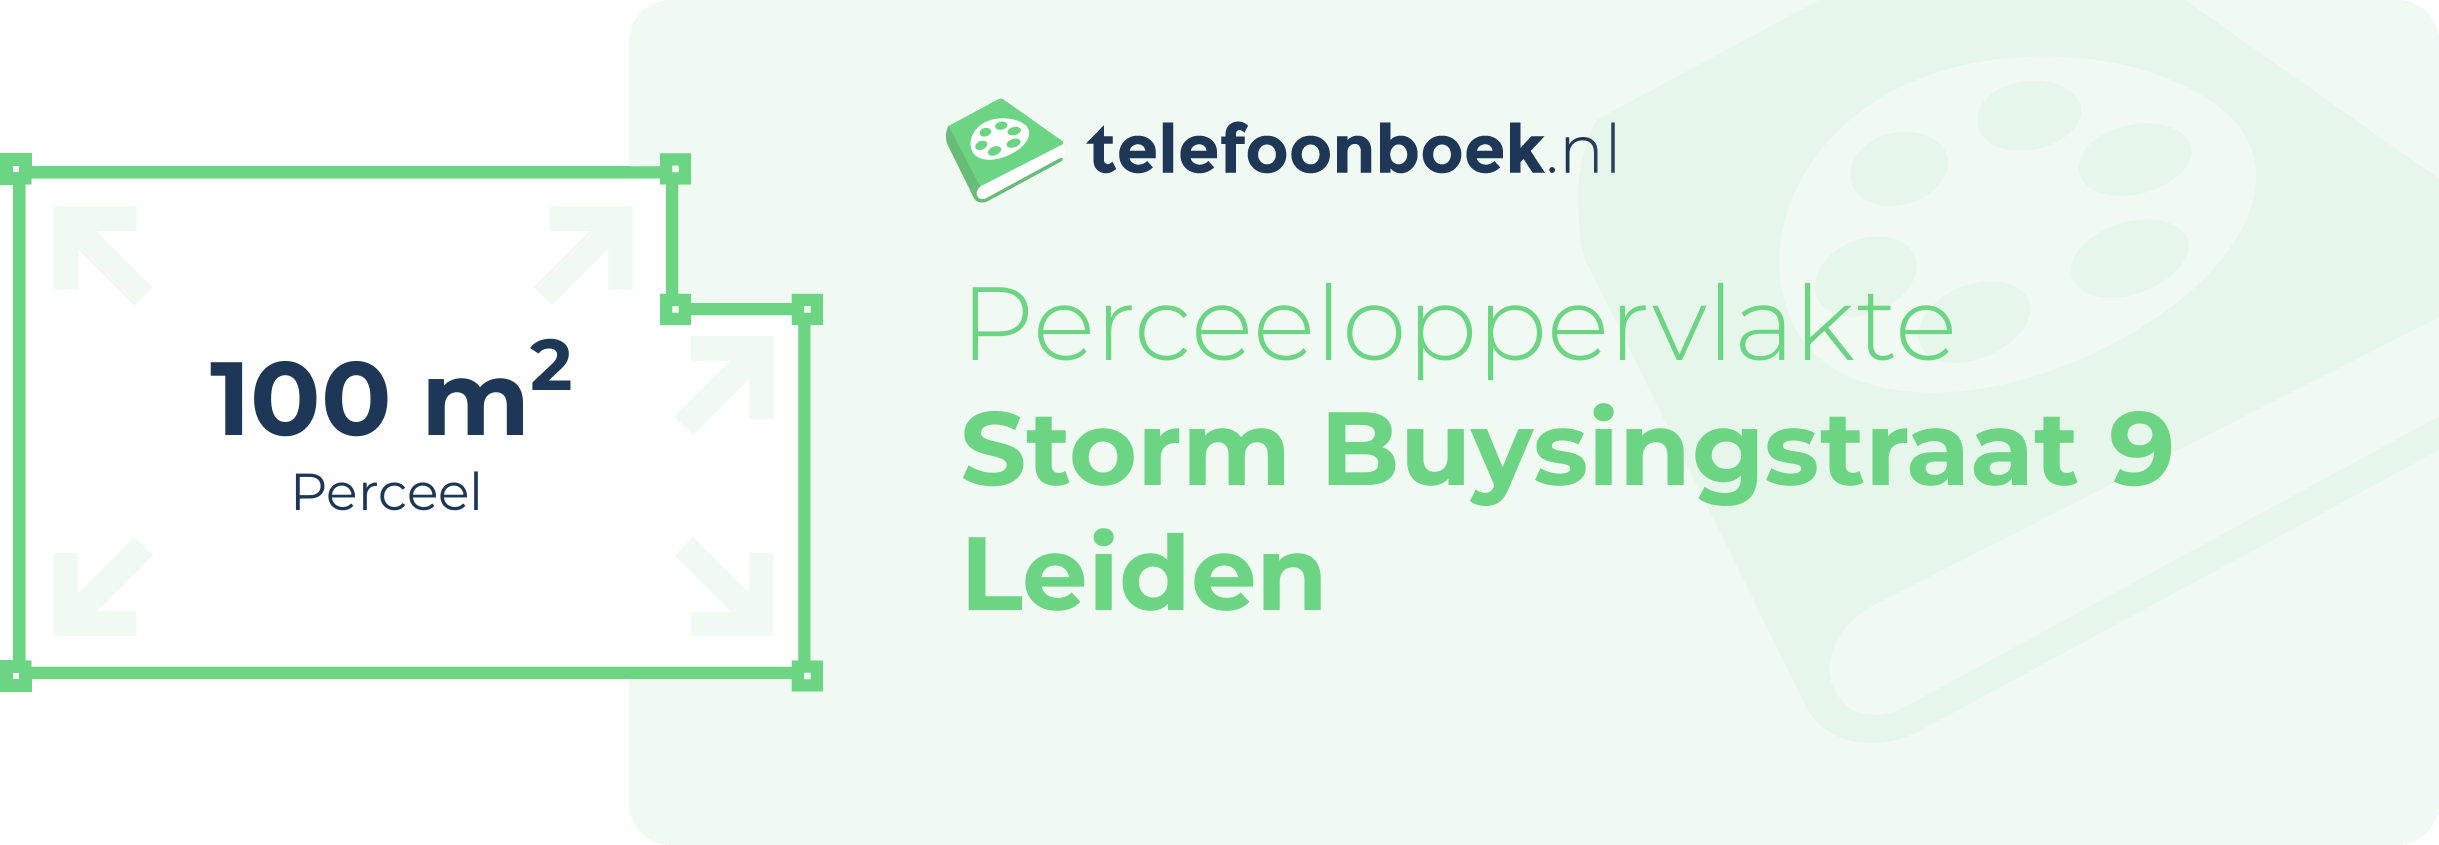 Perceeloppervlakte Storm Buysingstraat 9 Leiden